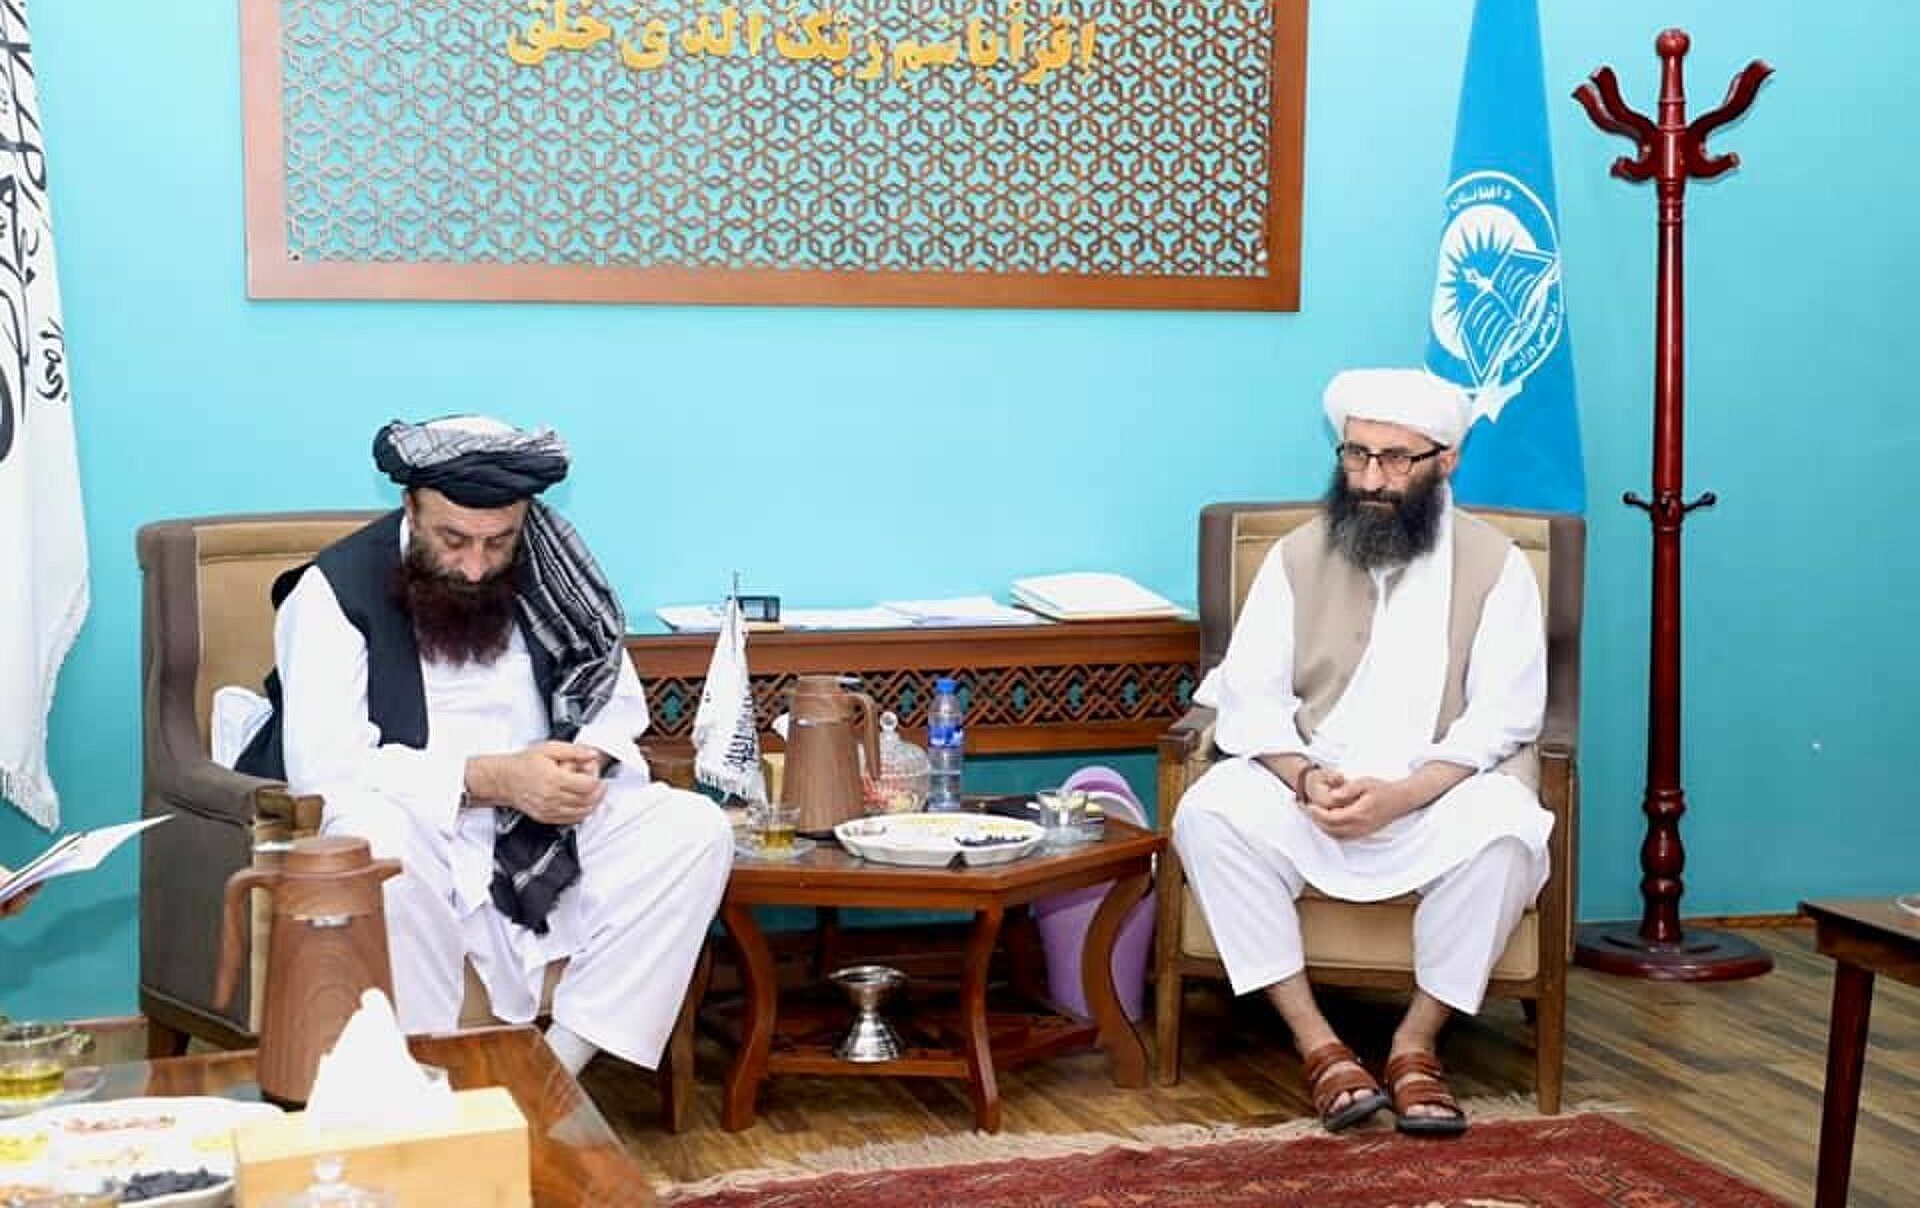 وزارت معارف طالبان می‌گوید سال تحصیلی در اول ماه حمل به روال معمول با حضور دانش آموزان دختر آغاز خواهد شد.